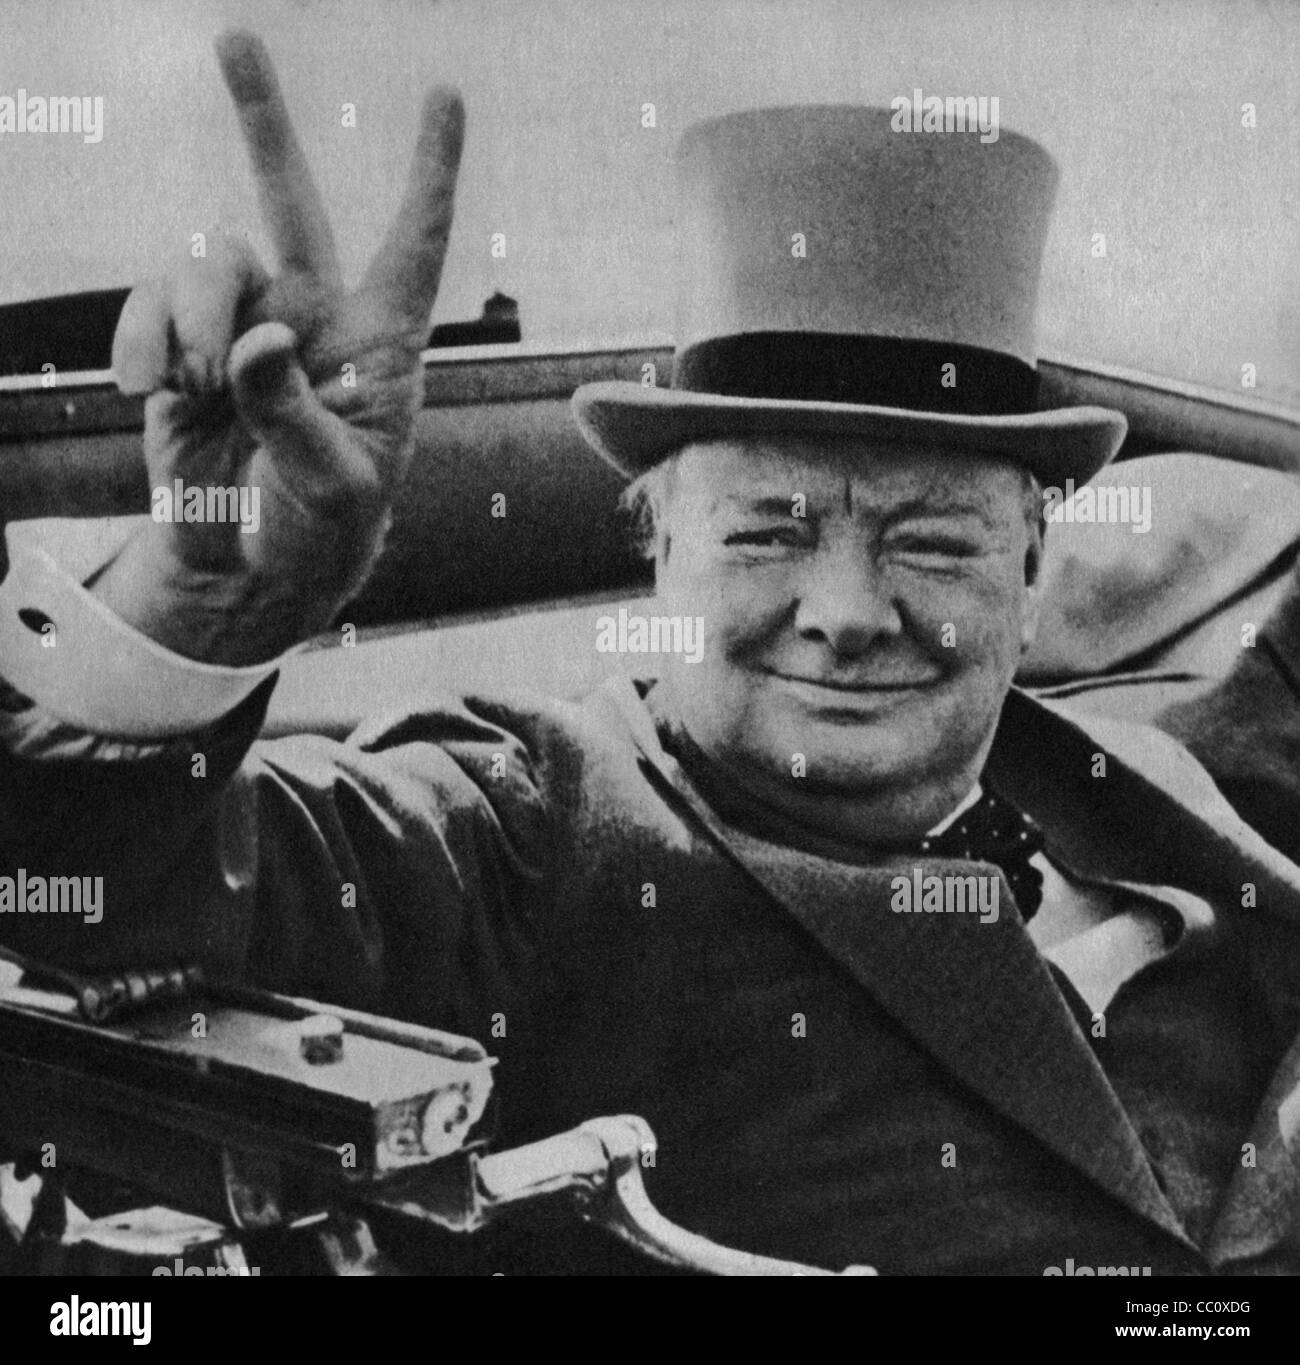 Britischen Führer Winston Churchill mit seiner berühmten V für Victory-Zeichen. Bild aus dem Archiv des Presse-Portrait-Service (ehemals Porträt Pressebüro) 1946 Bild Stockfoto